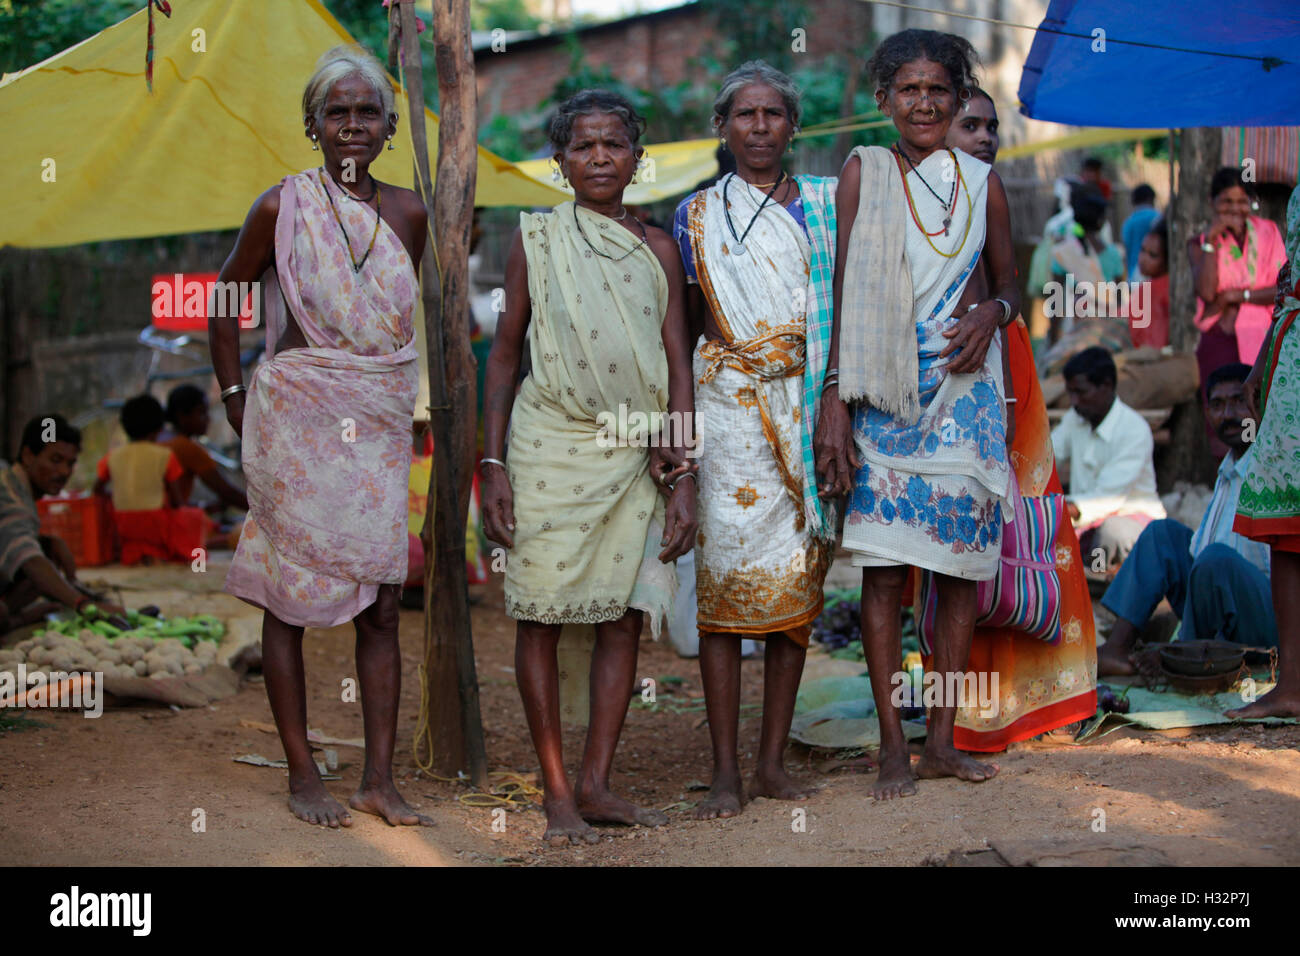 Women, Madia Gond tribe, Hemalkasa weekly market, Nagpur, Maharashtra, India Stock Photo